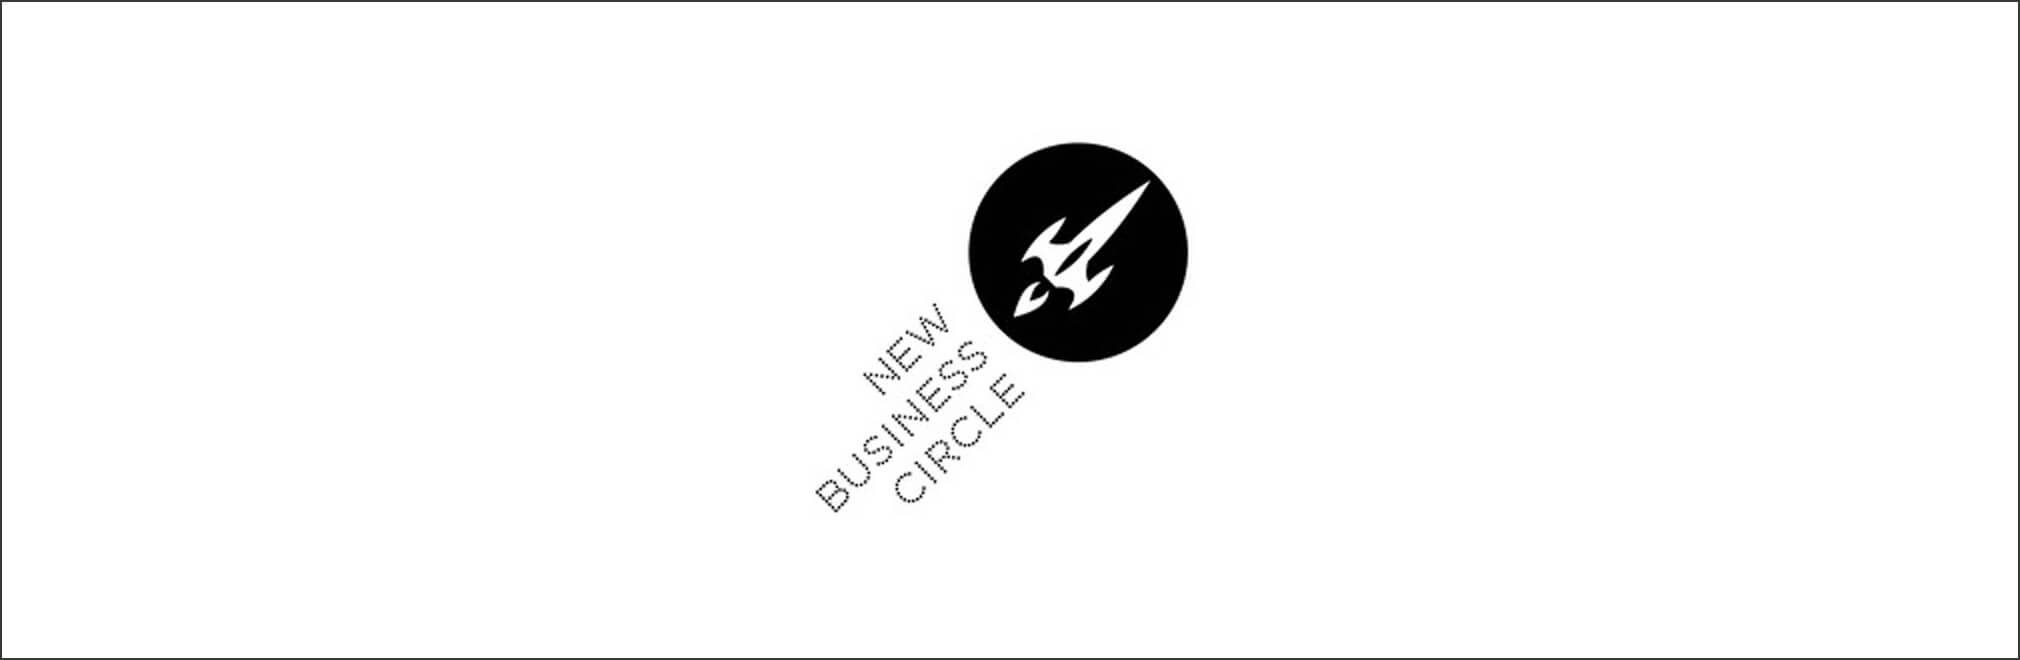 New Business Circle gegründet